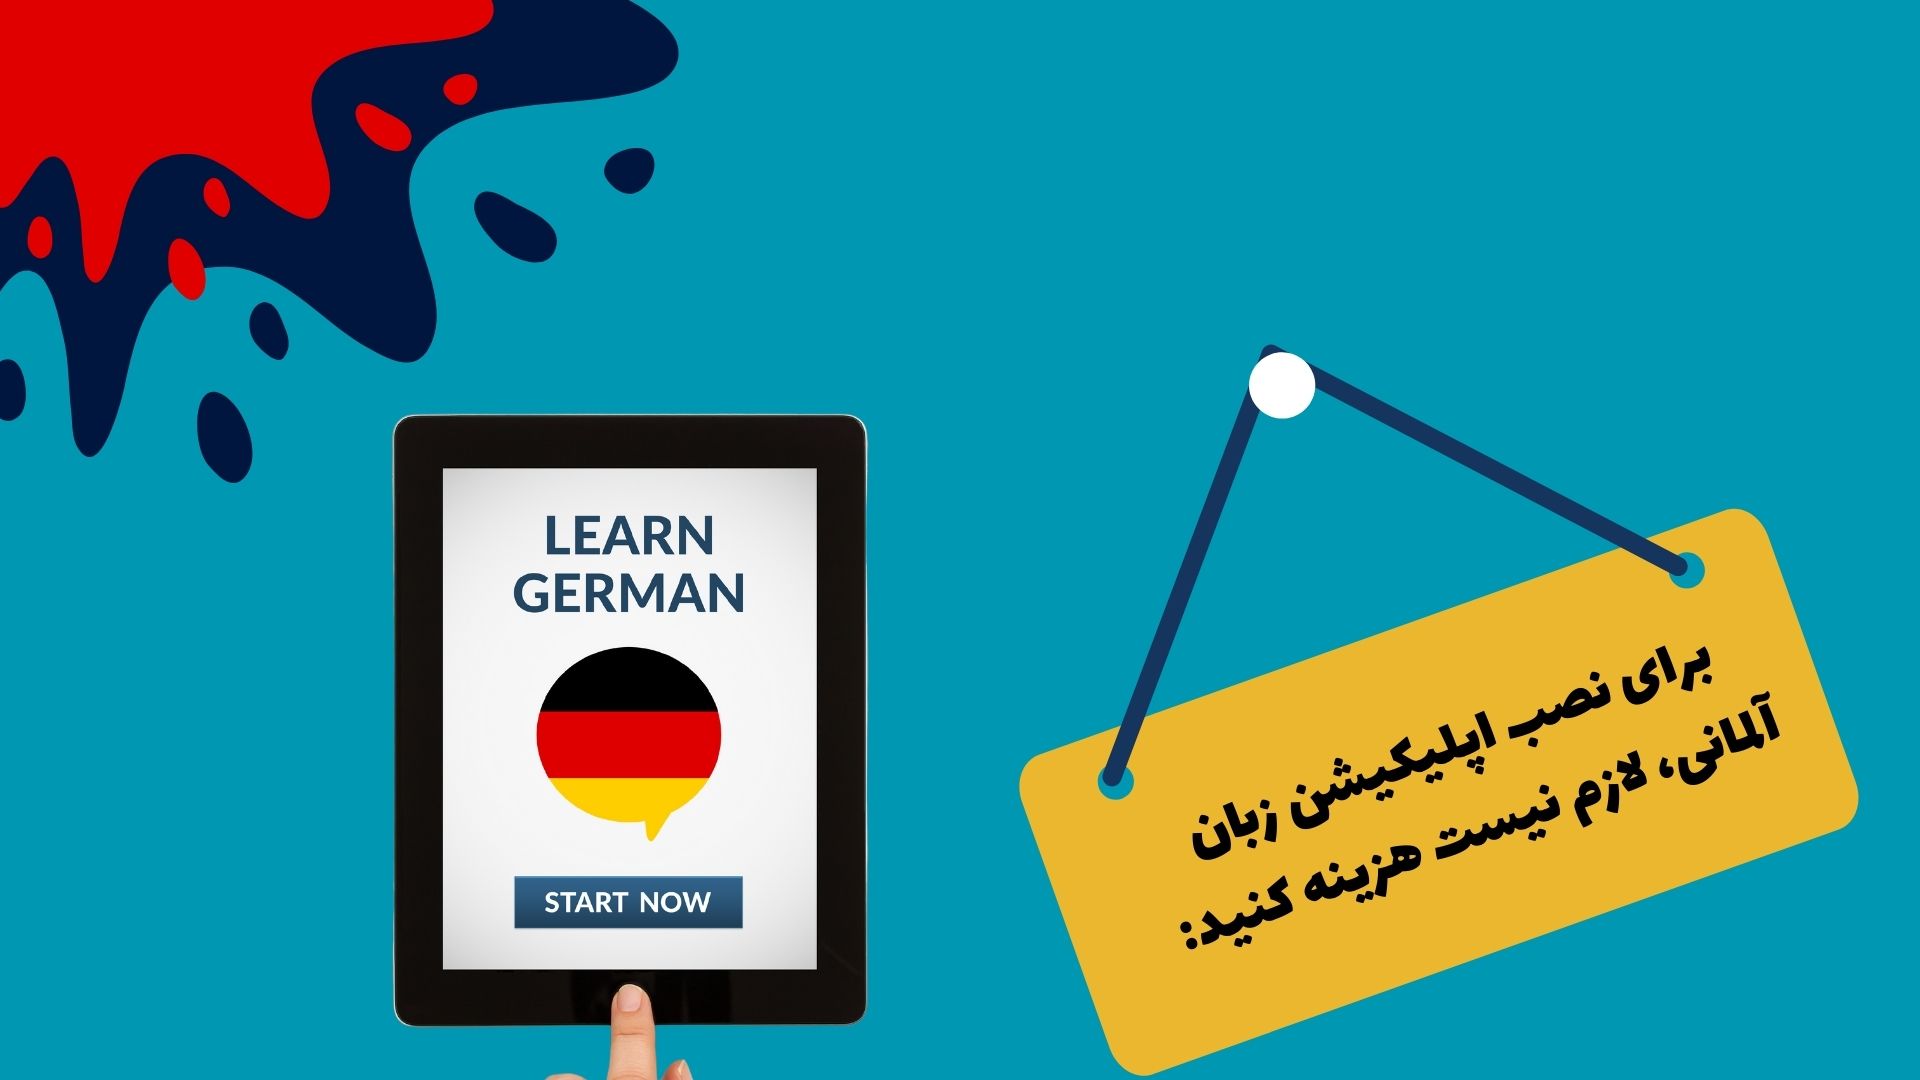 برای نصب اپلیکیشن زبان آلمانی، لازم نیست هزینه کنید: